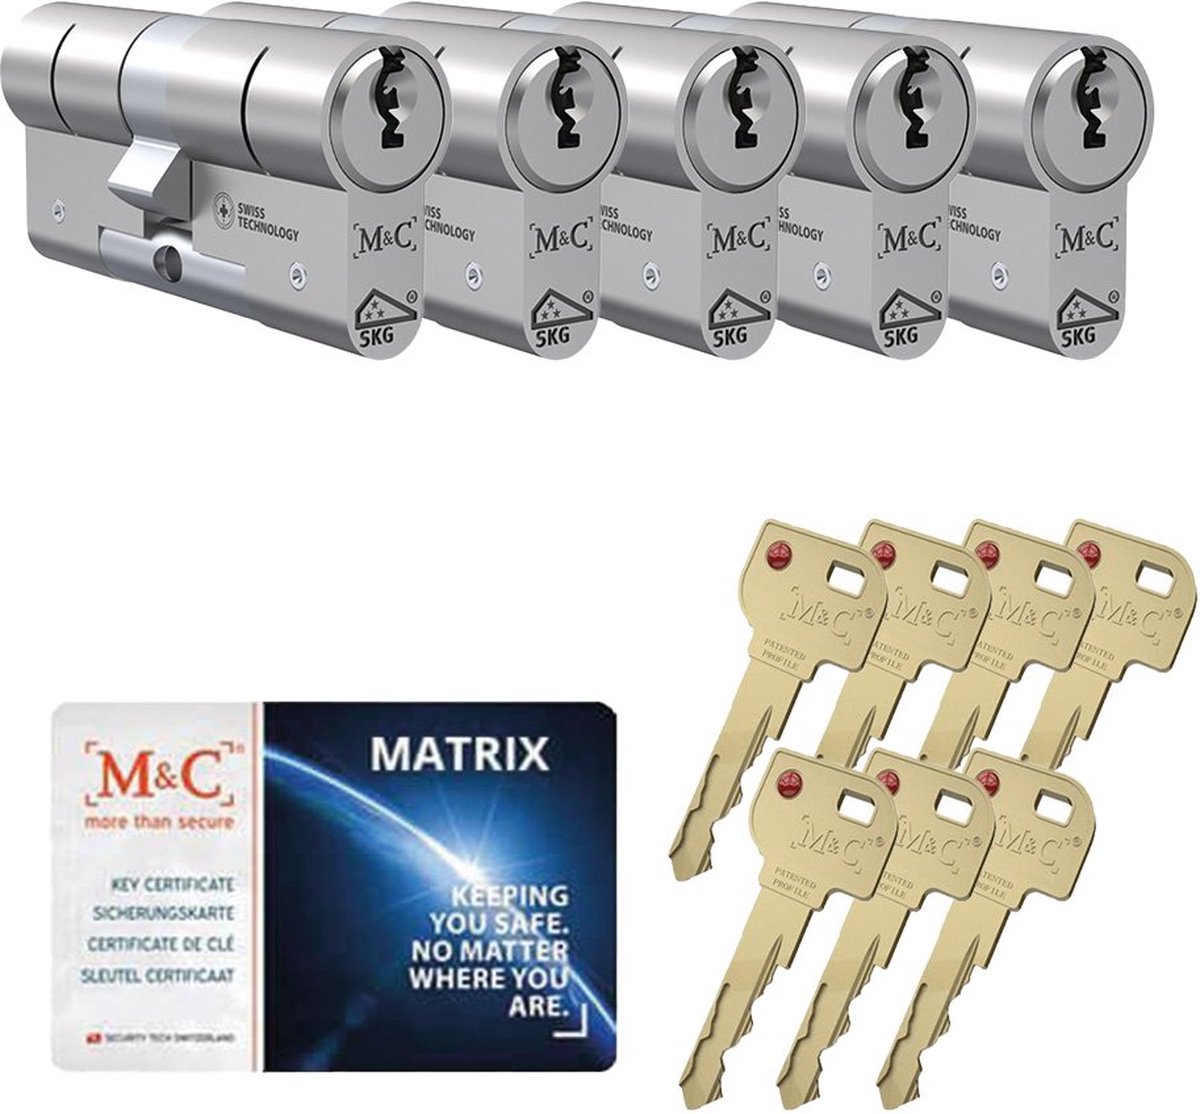 M&C Matrix SKG*** cilinderslot gelijksluitende set van 5